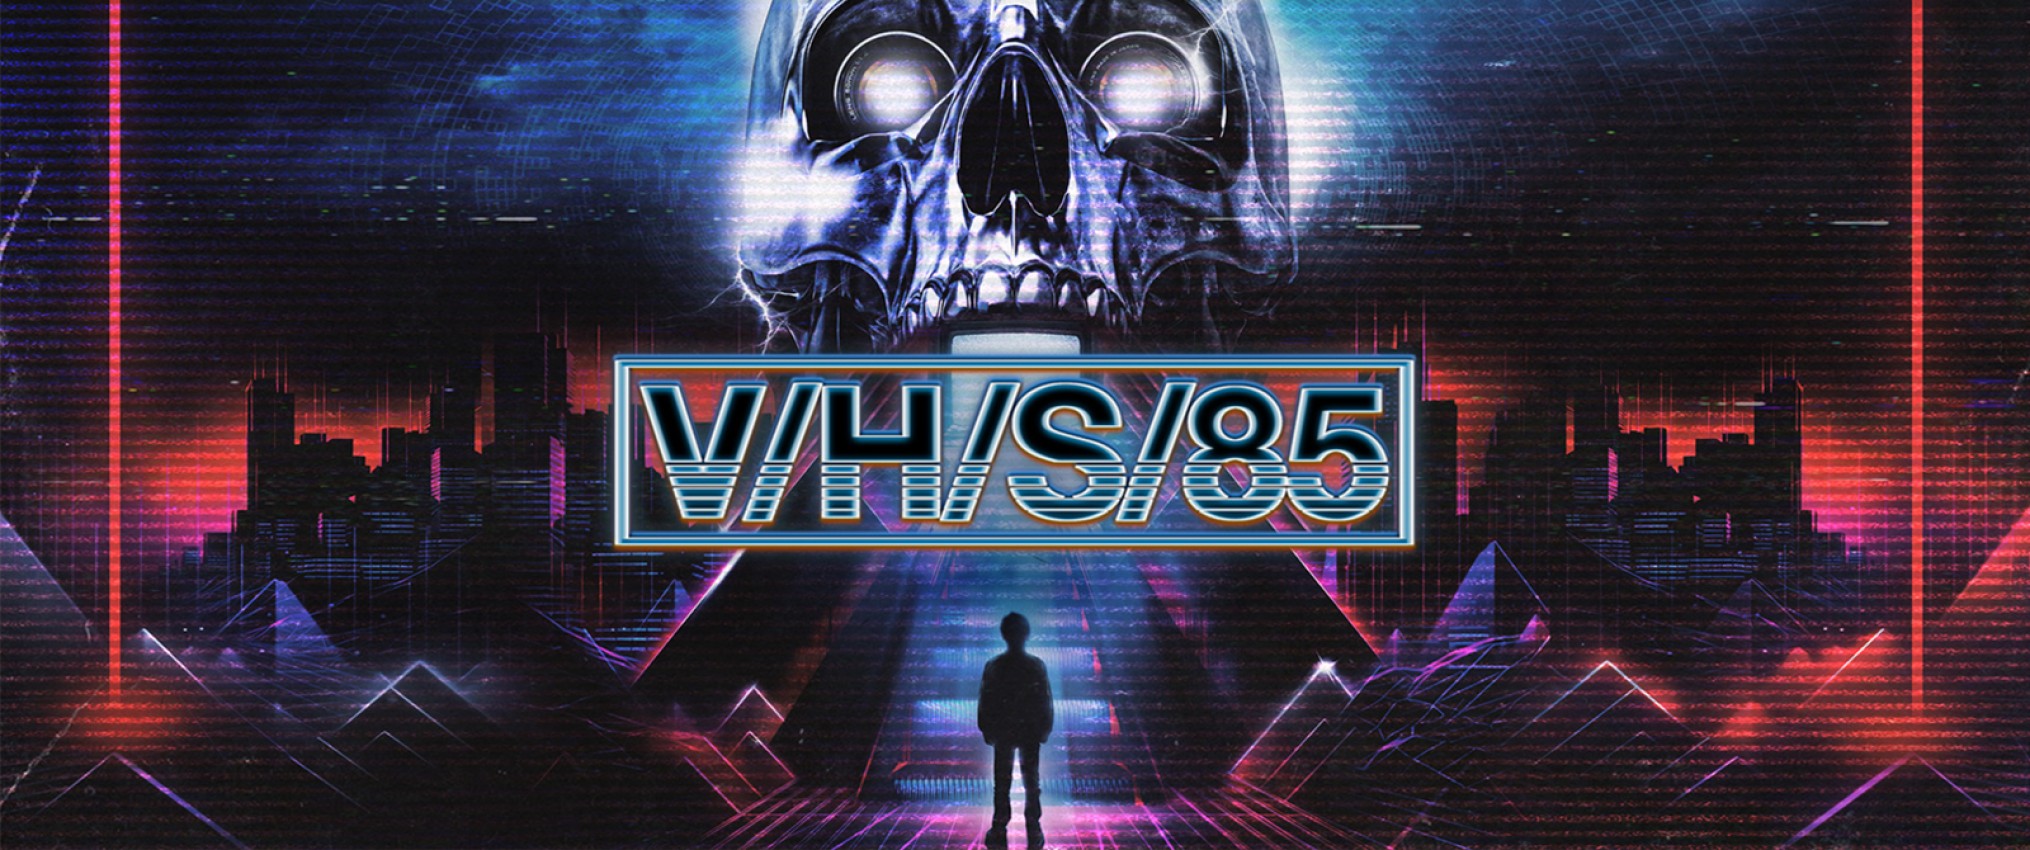 VHS 85 (ESTRENO)